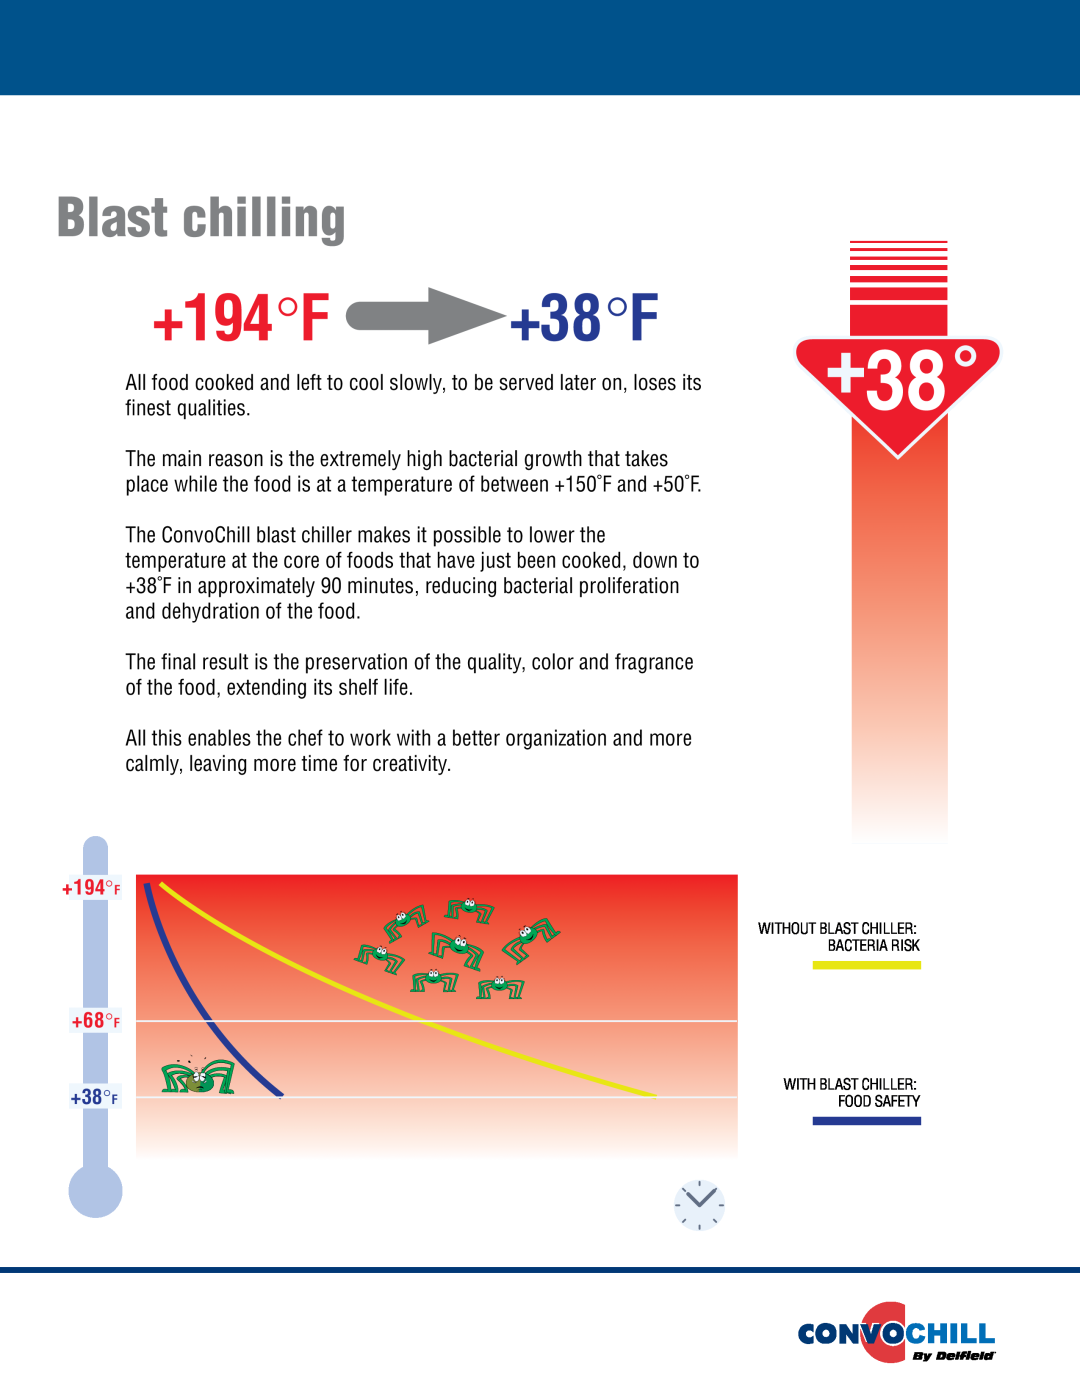 Delfield Blast Chillers/Shock Freezers manual +38 F, +194BlastοοFchilling+38οοF, Blast chilling, finest qualities 